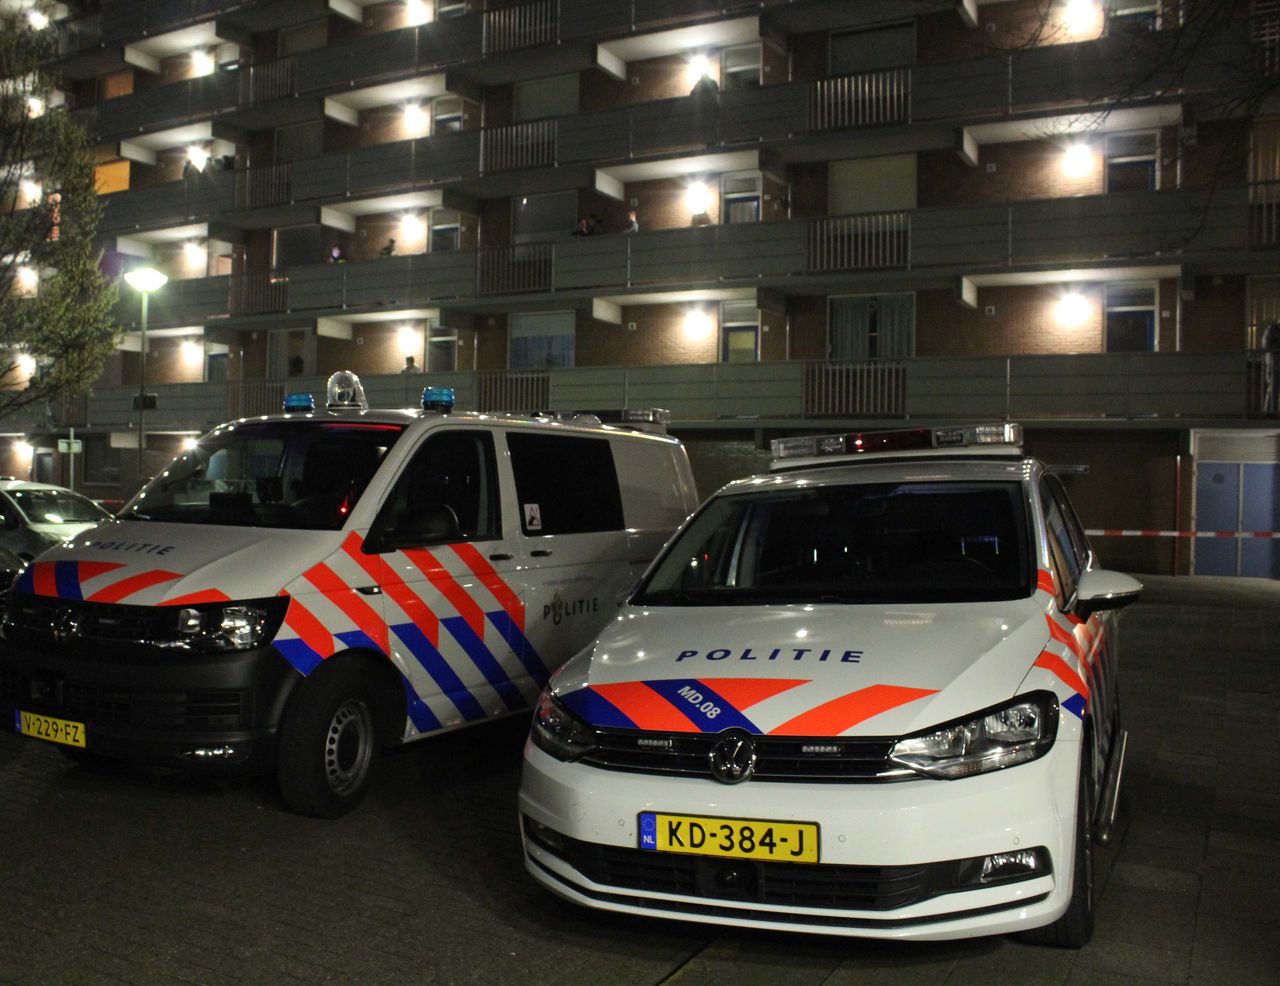 De politie heeft in een woning aan de Sandenburgstraat in Breda een dode man aangetroffen. De man werd gevonden na een melding over een schietpartij in de flat.